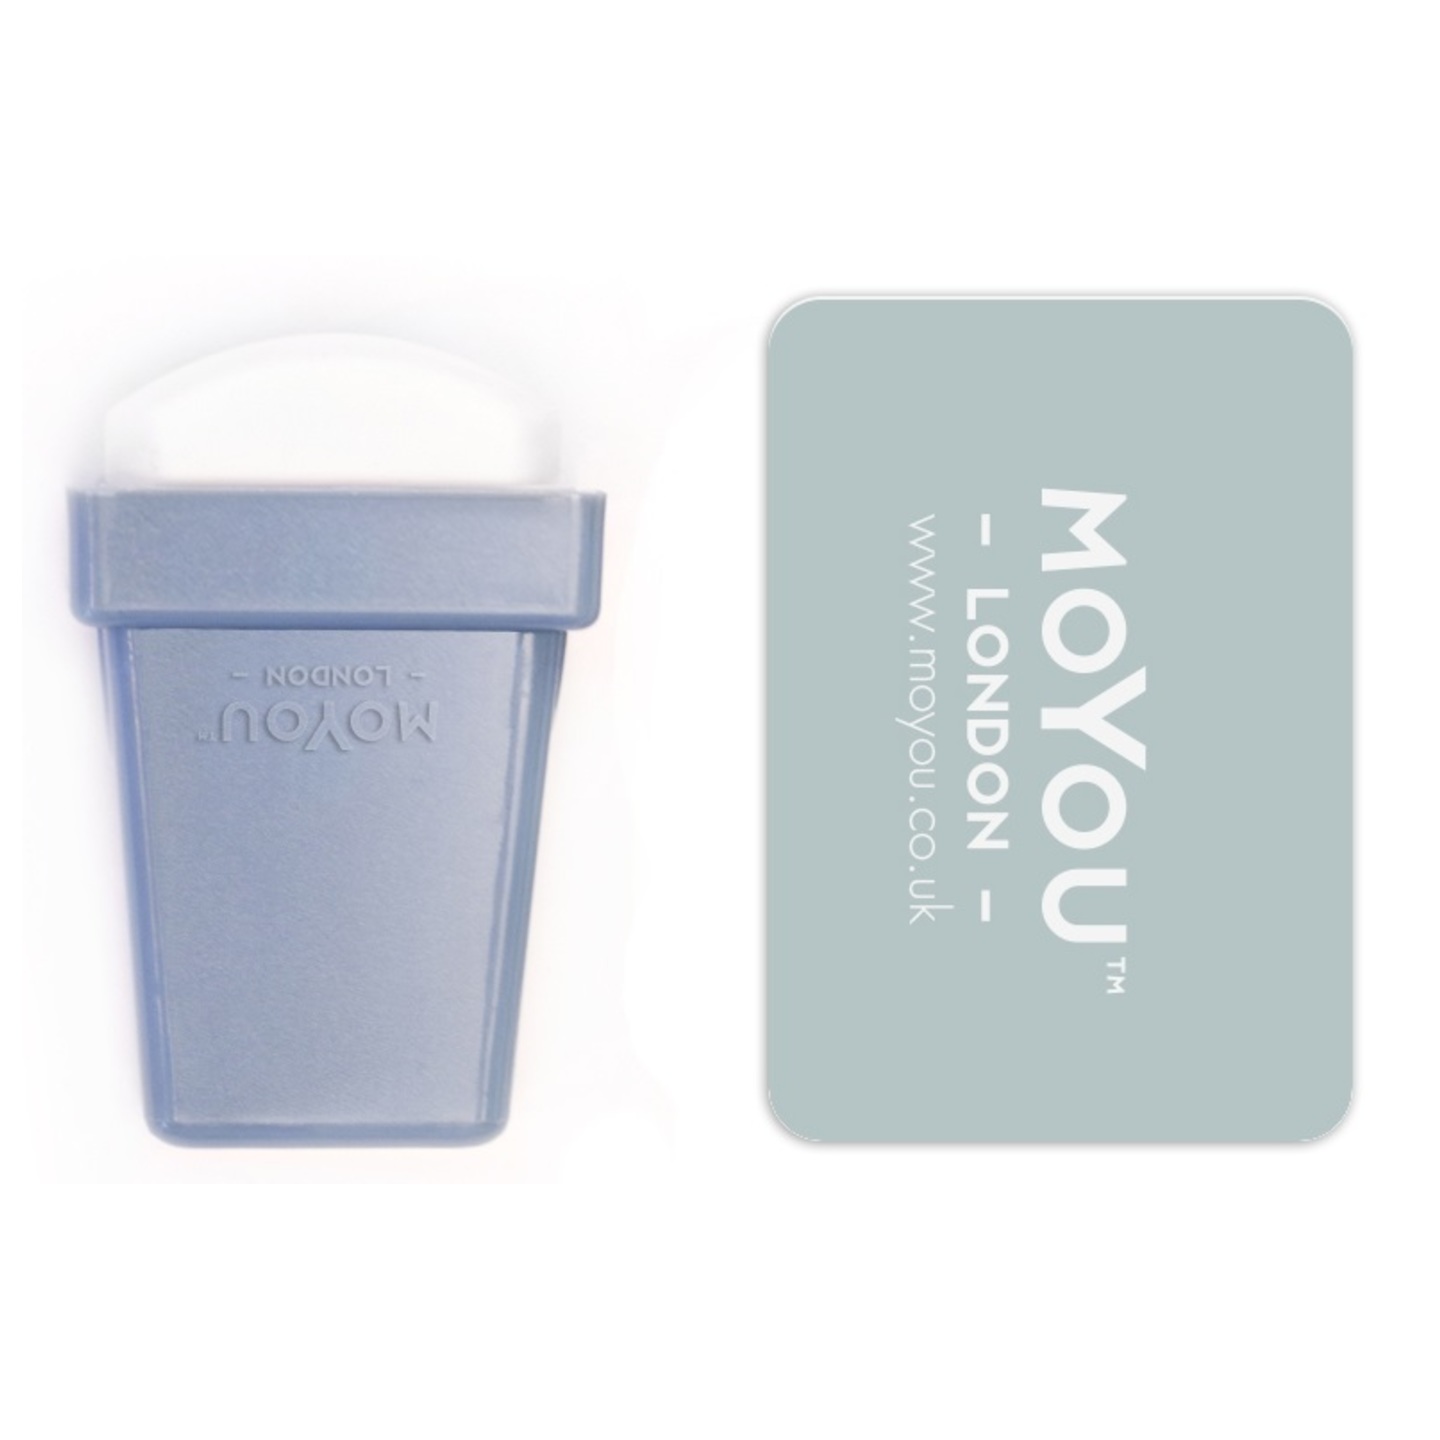 MoYou™ Stamp & Scraper